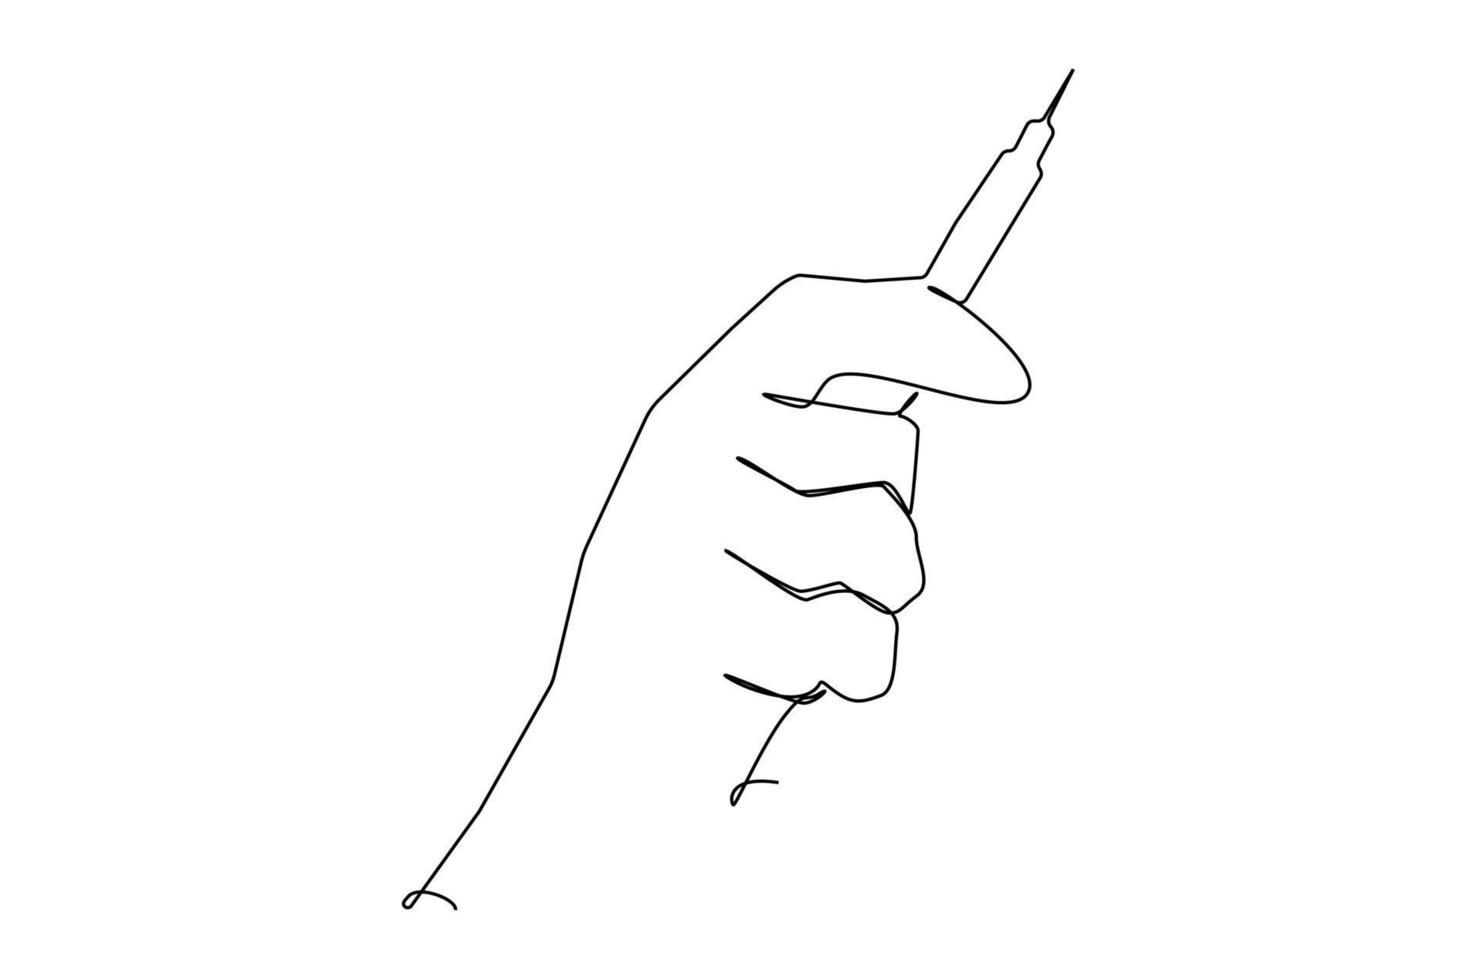 jeringa en mano. una línea dibujando un objeto vectorial aislado a mano sobre un fondo blanco vector